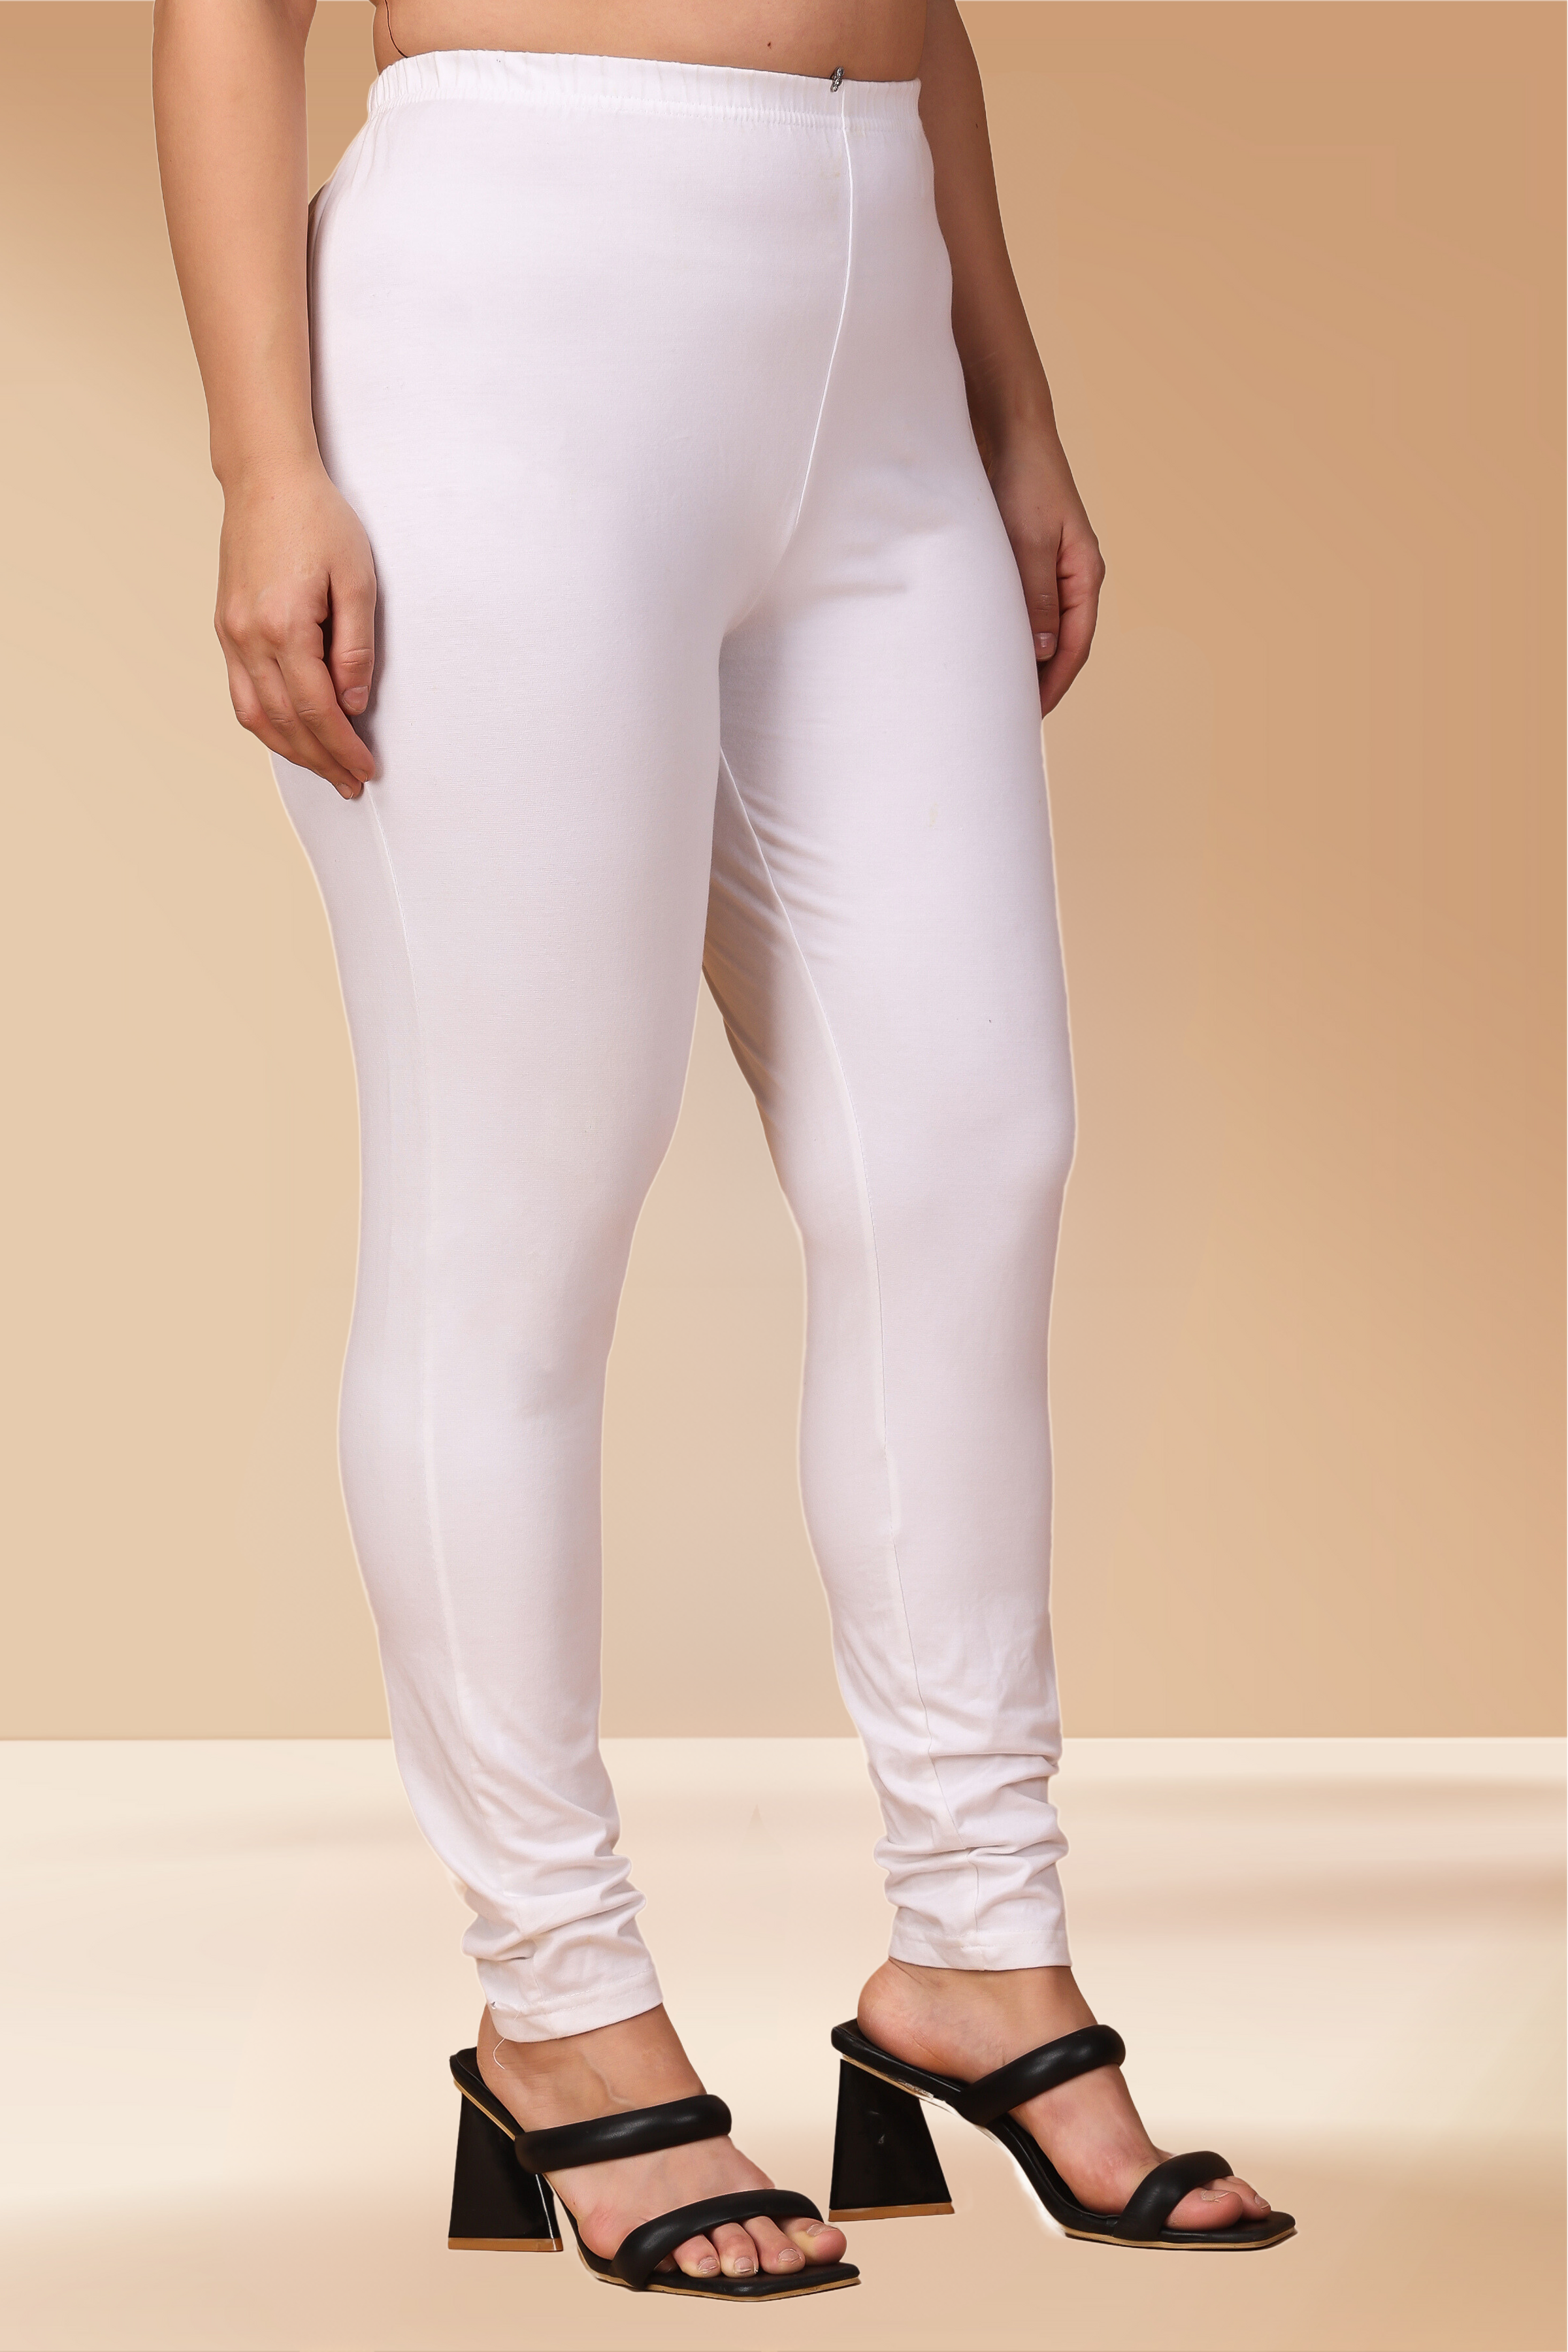 Buy Lyra Women Solid Coloured White Leggings Online